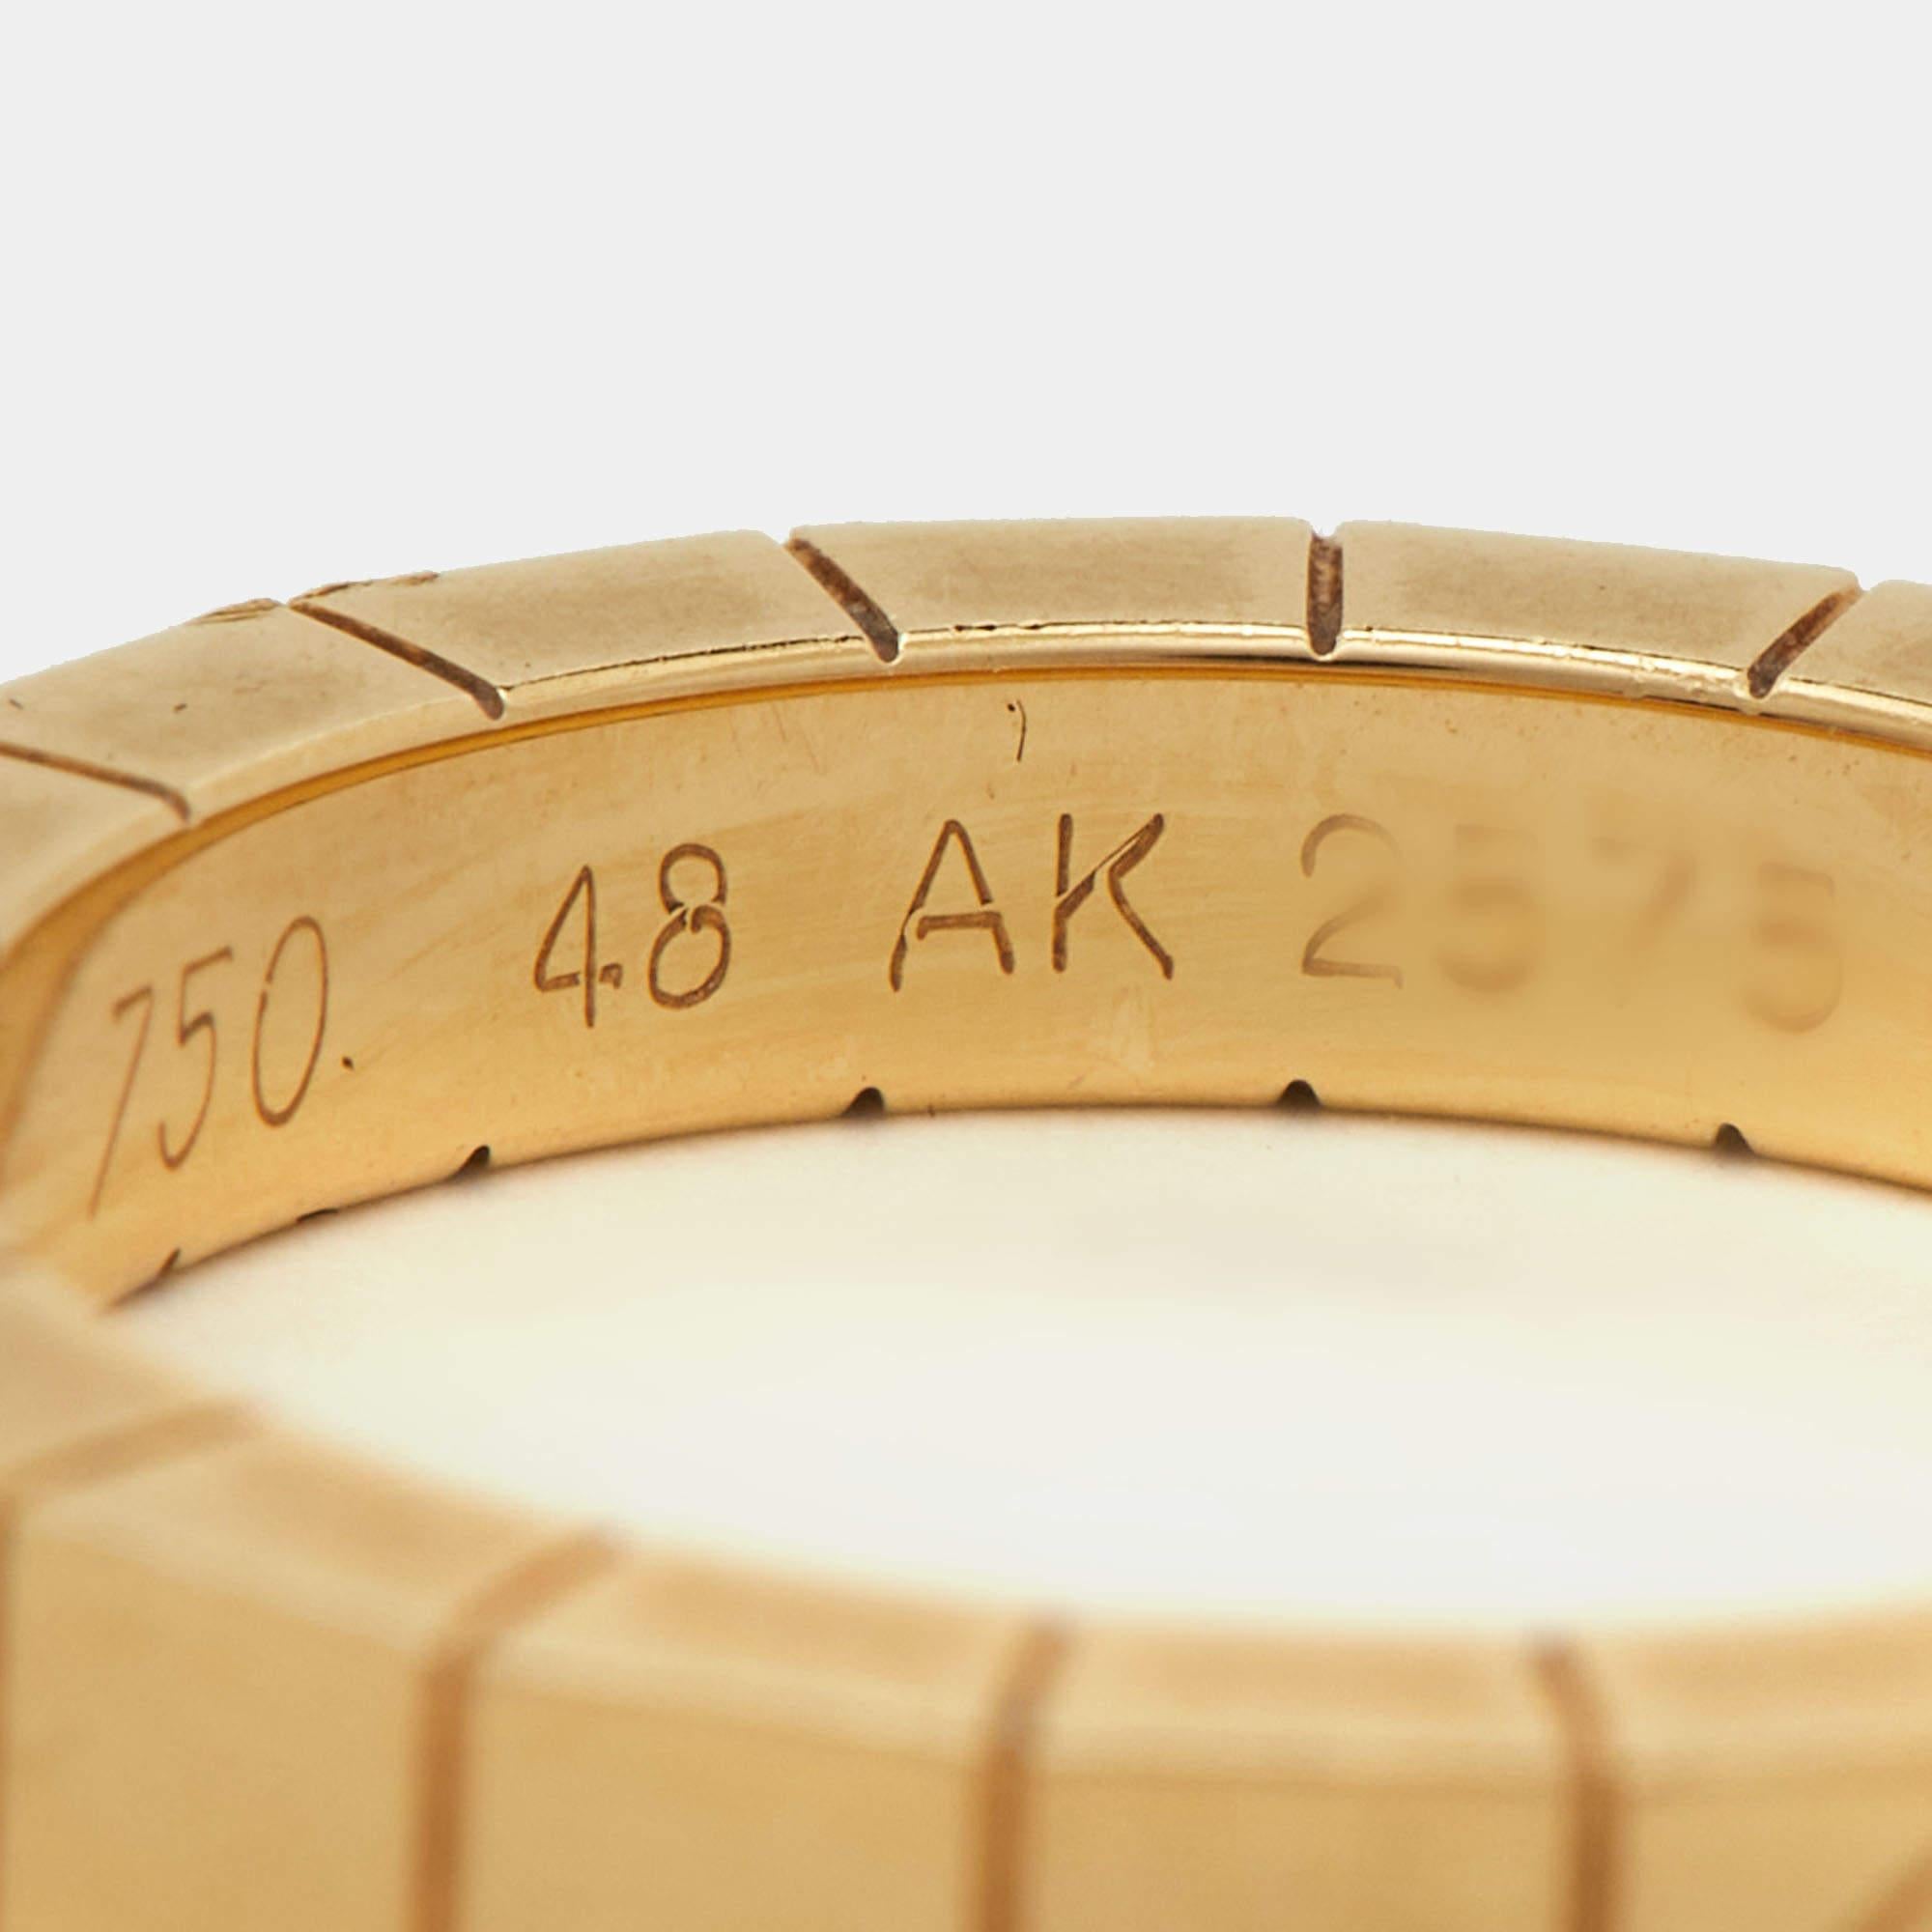 Der Ring Cartier Lanieres ist ein luxuriöses Schmuckstück, das aus 18 Karat Gelbgold gefertigt ist. Dieses schlanke und elegante Design zeichnet sich durch dünne, parallele Bänder aus, die sich um den Finger schlingen und einen modernen und